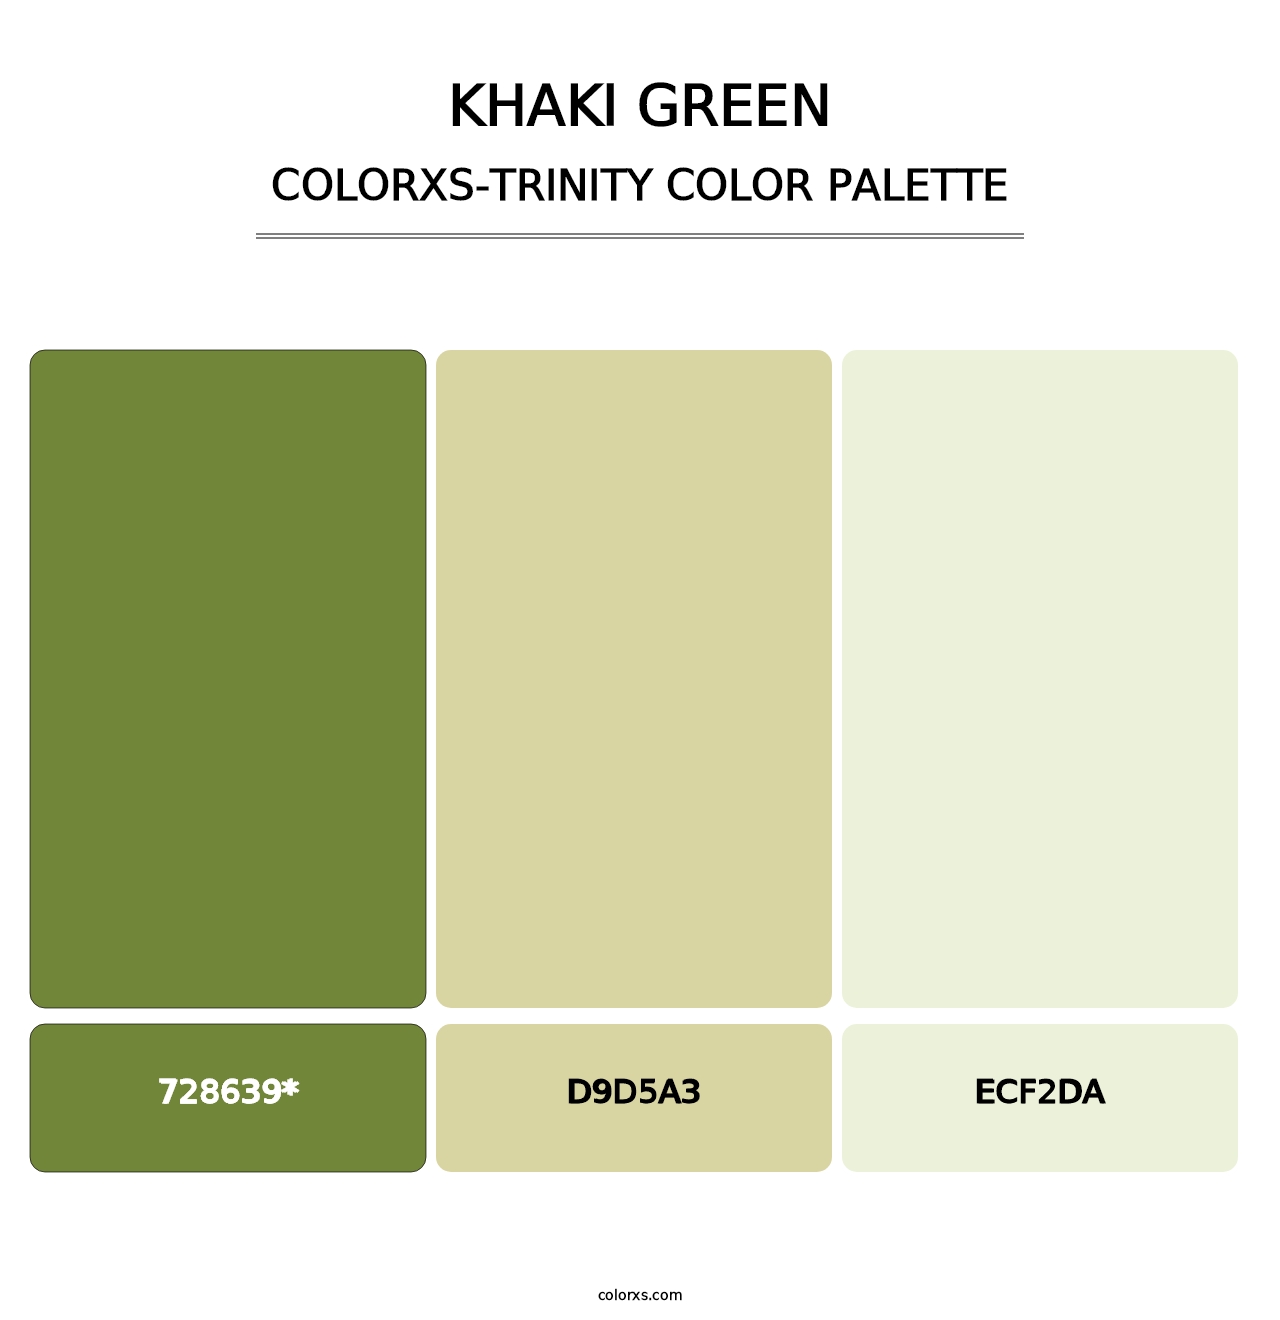 Khaki Green - Colorxs Trinity Palette